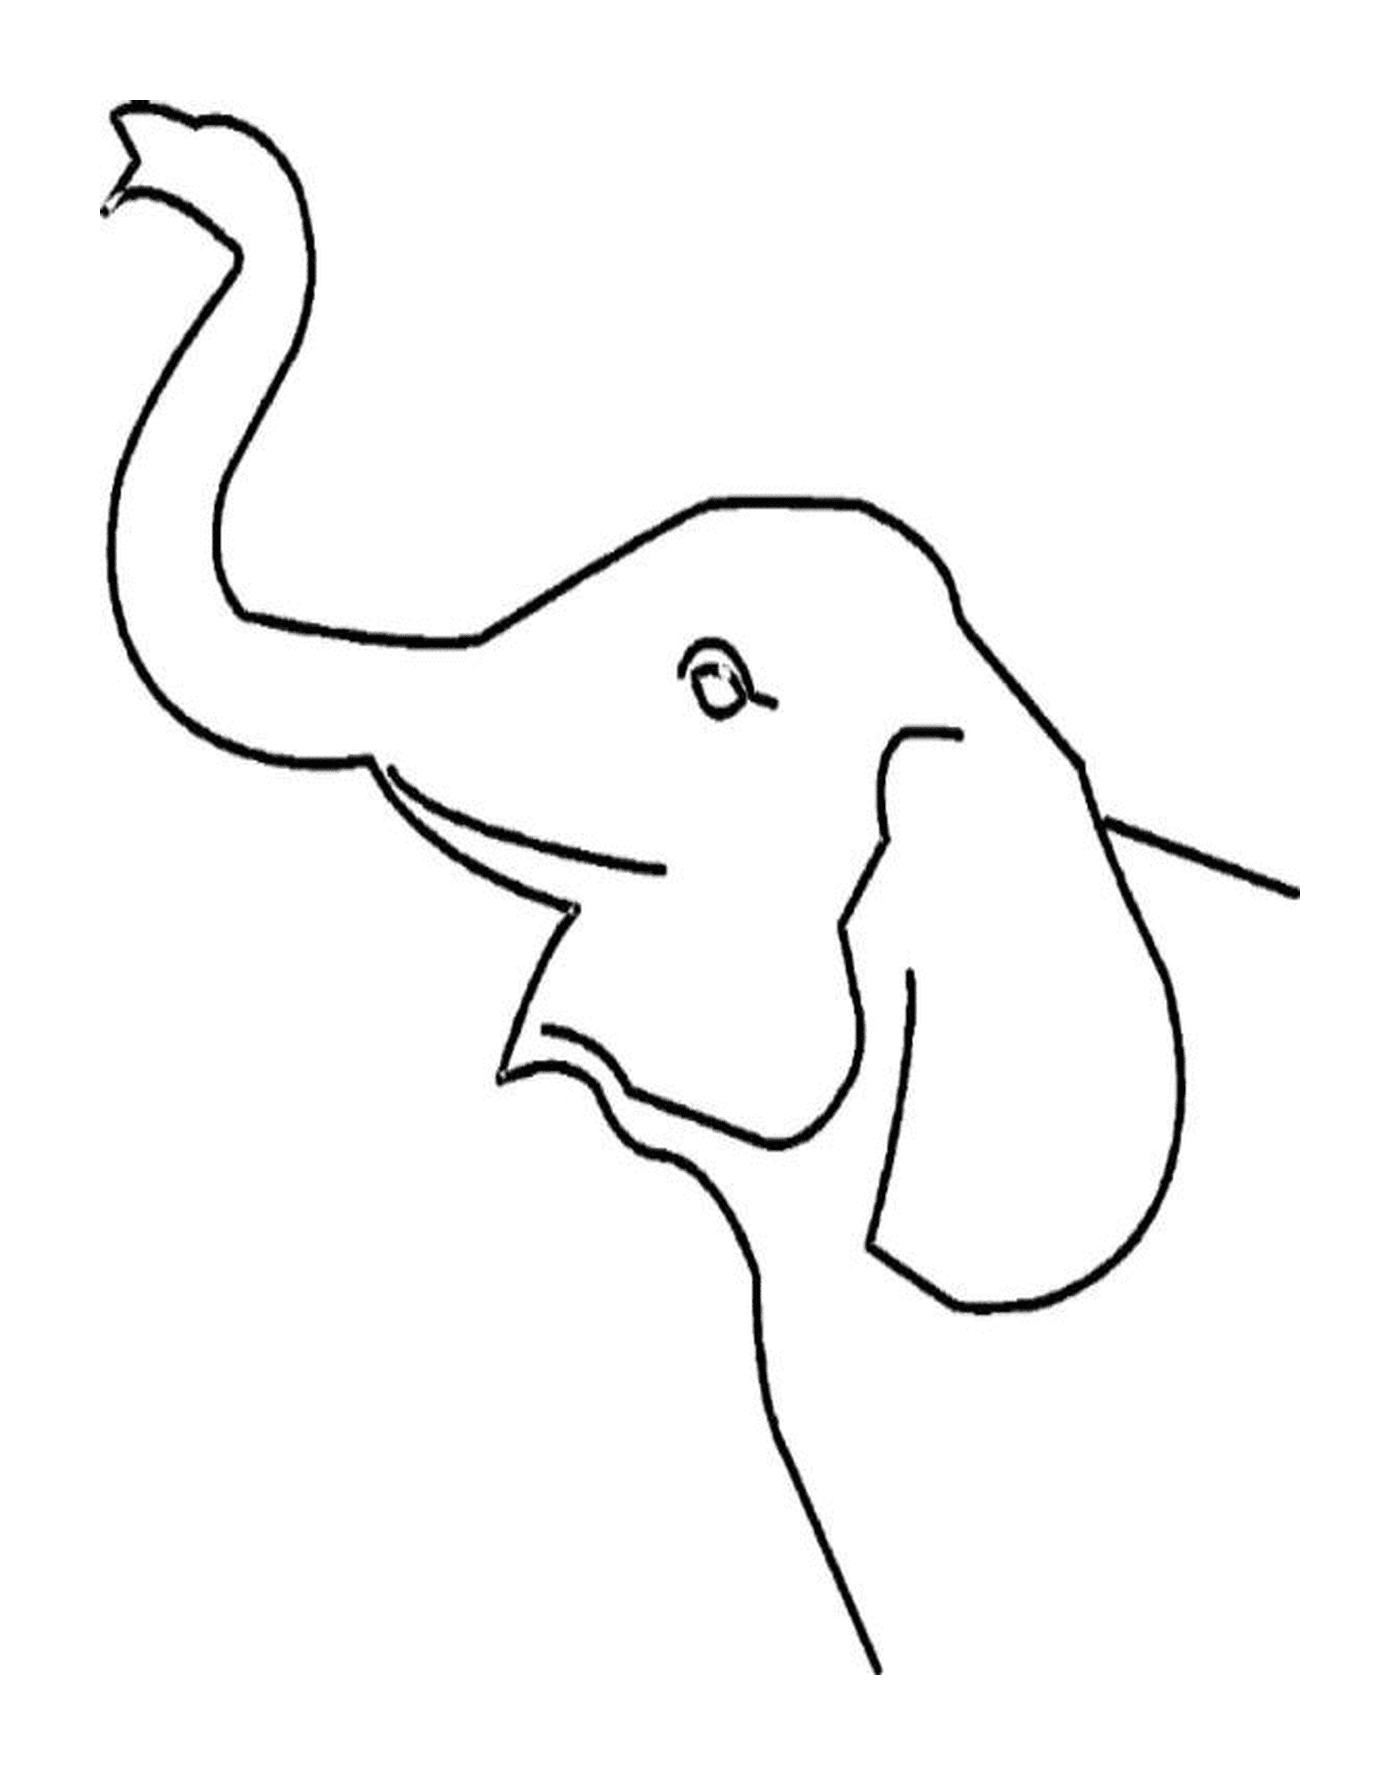  Ein Elefantenstamm taucht auf 